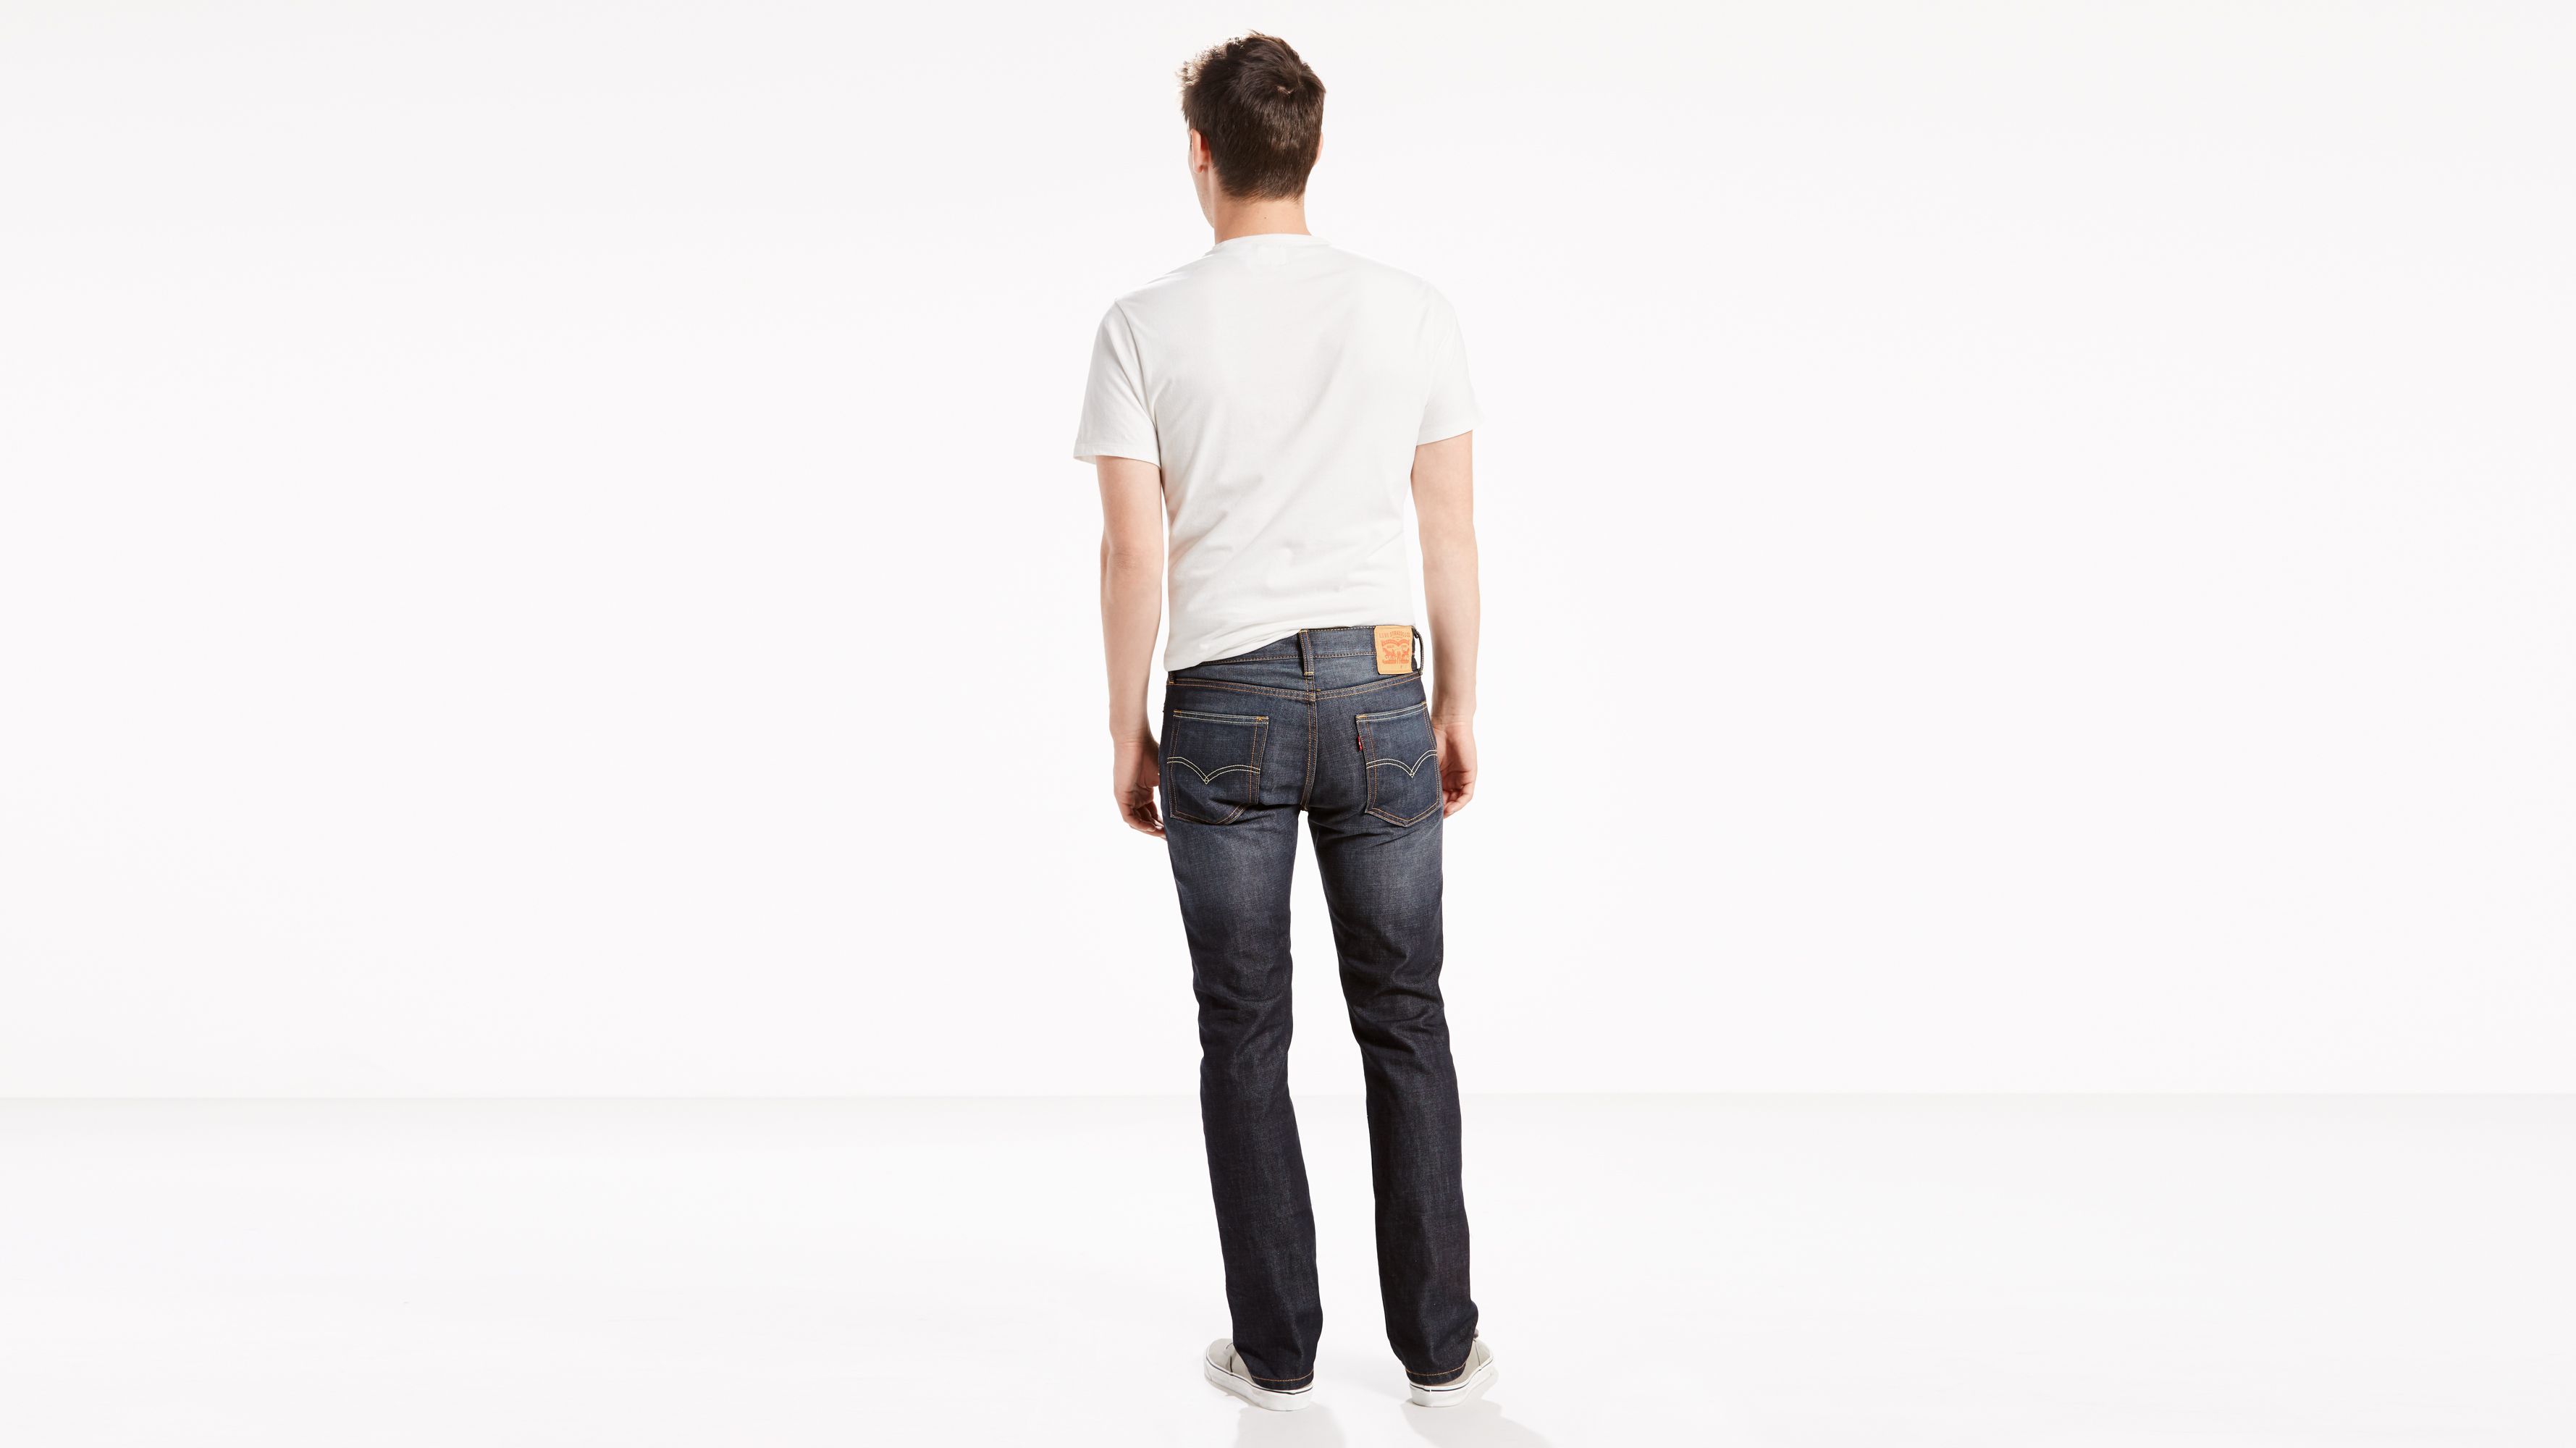 levis jeans for men 513